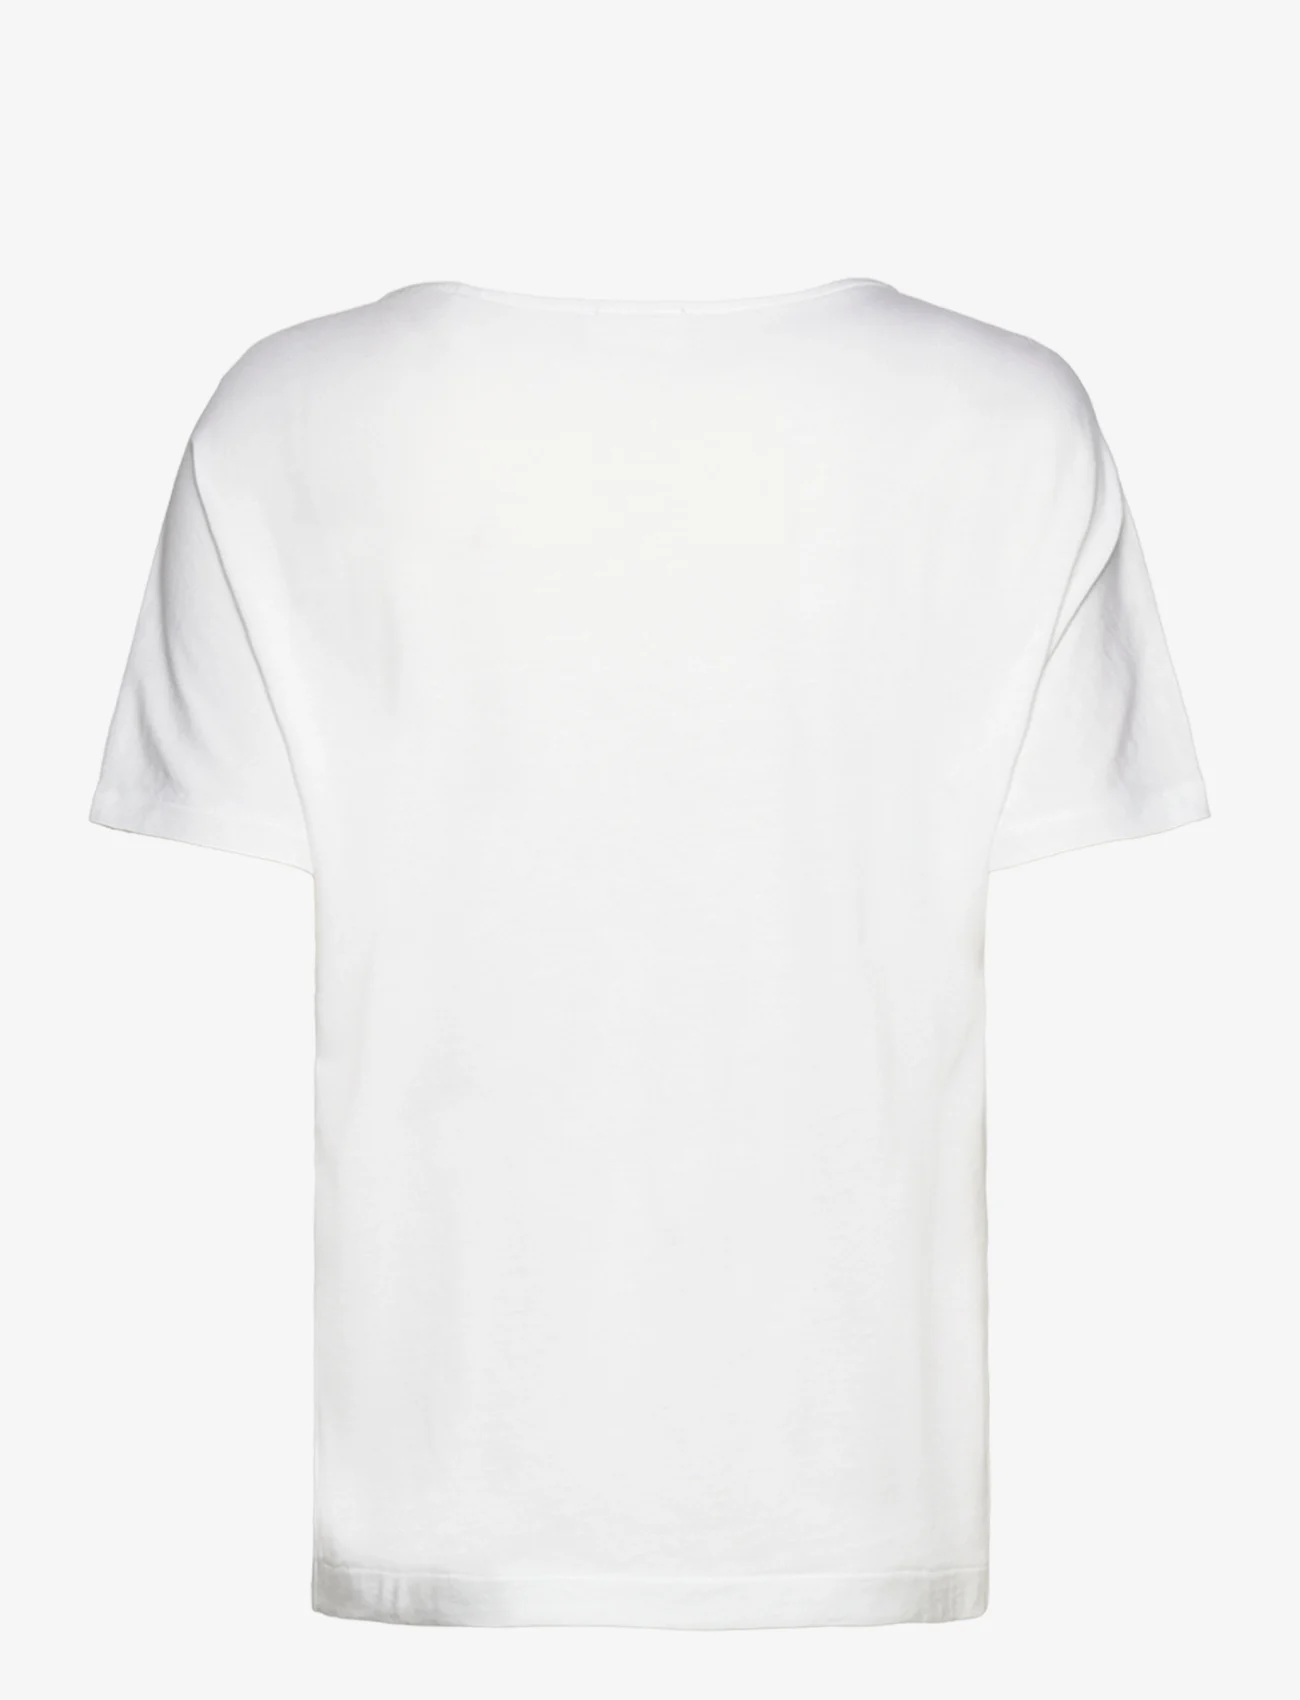 Esprit Casual - T-Shirts - mažiausios kainos - white - 1